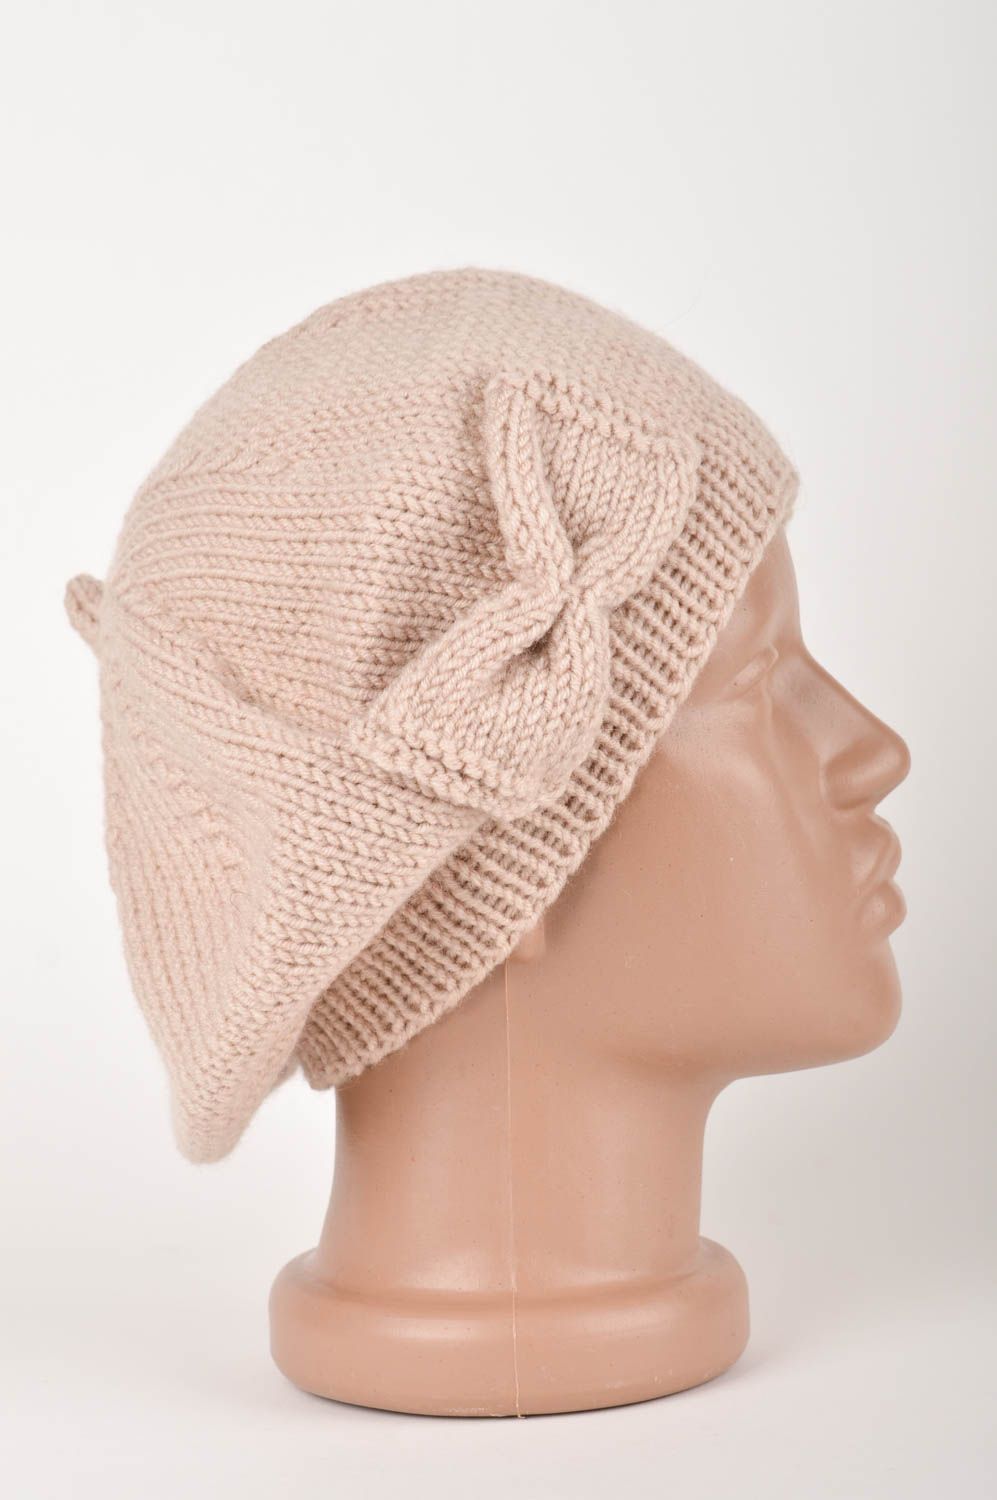 Handmade crocheted beret warm unusual cap crocheted headwear for women photo 3